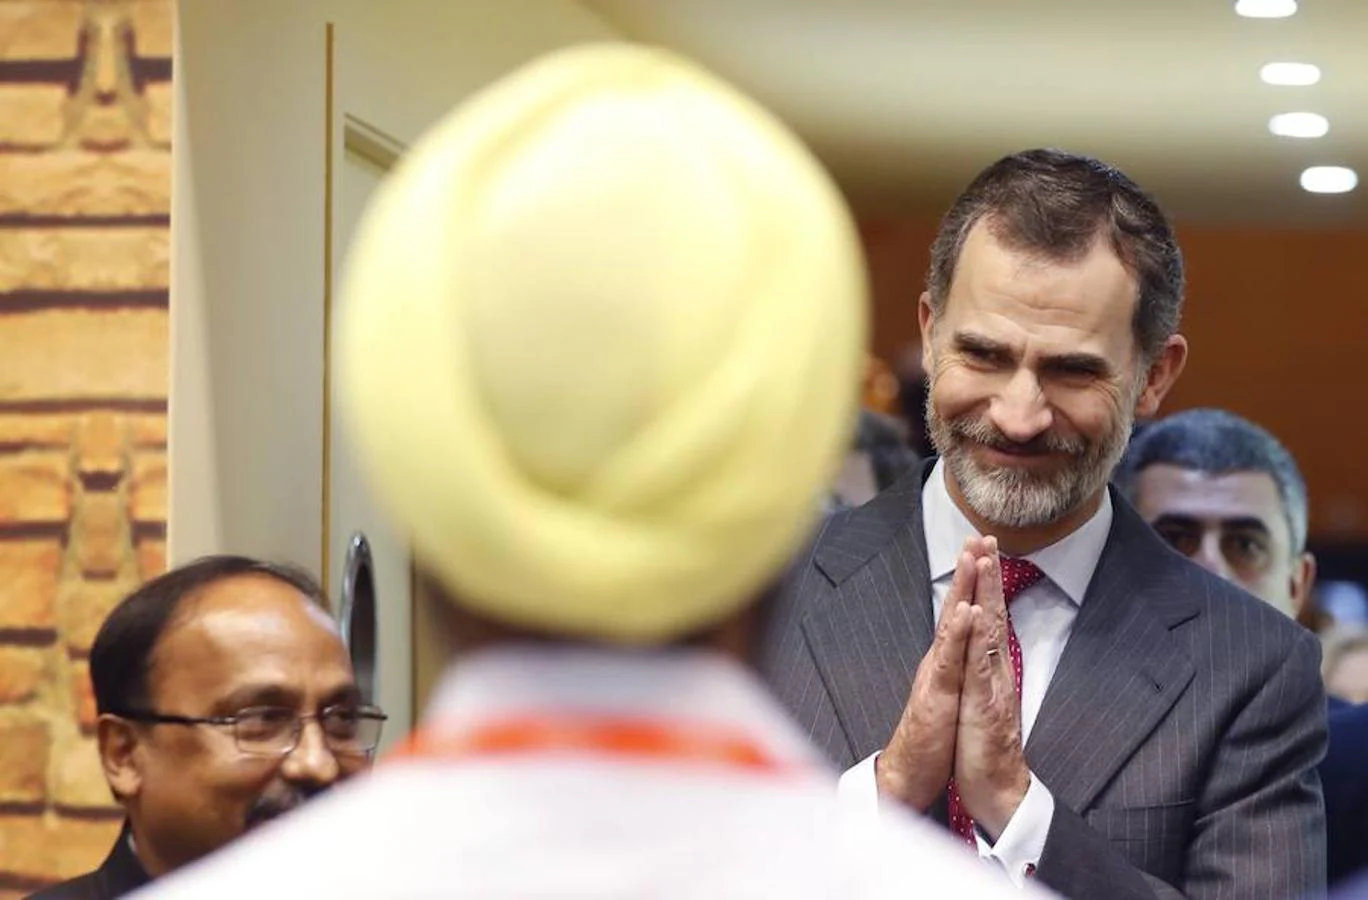 El Rey Felipe VI saluda a un hindú durante el recorrido que los reyes han realizado hoy por la trigésimo octava Feria Internacional de Turismo (Fitur), que acoge este año a unas 10.000 entidades públicas y privadas de 165 países. 